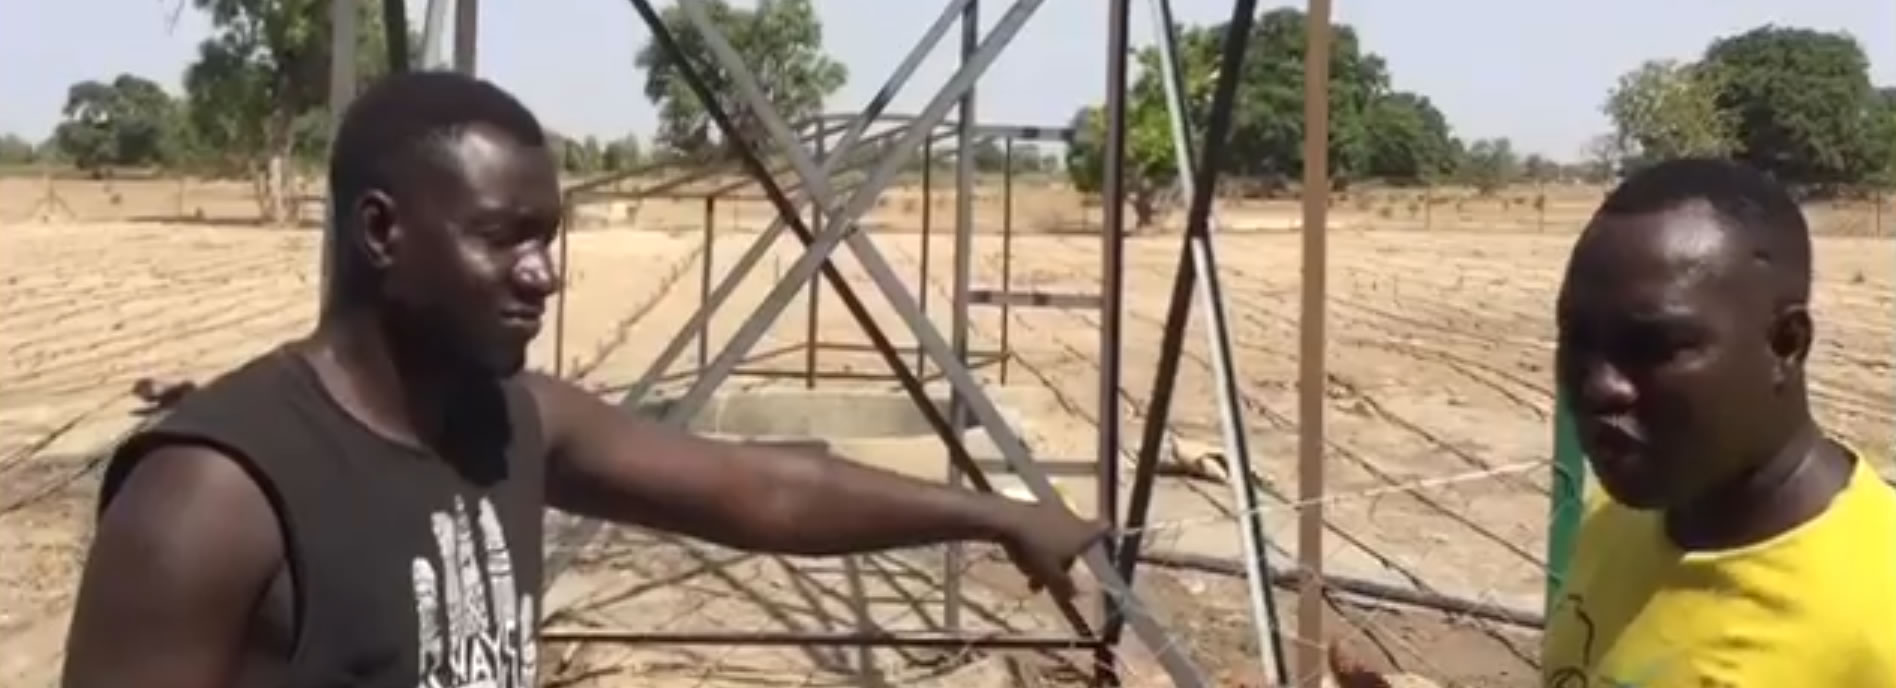 Istallazione dei pannelli solari per l’orto in Gambia